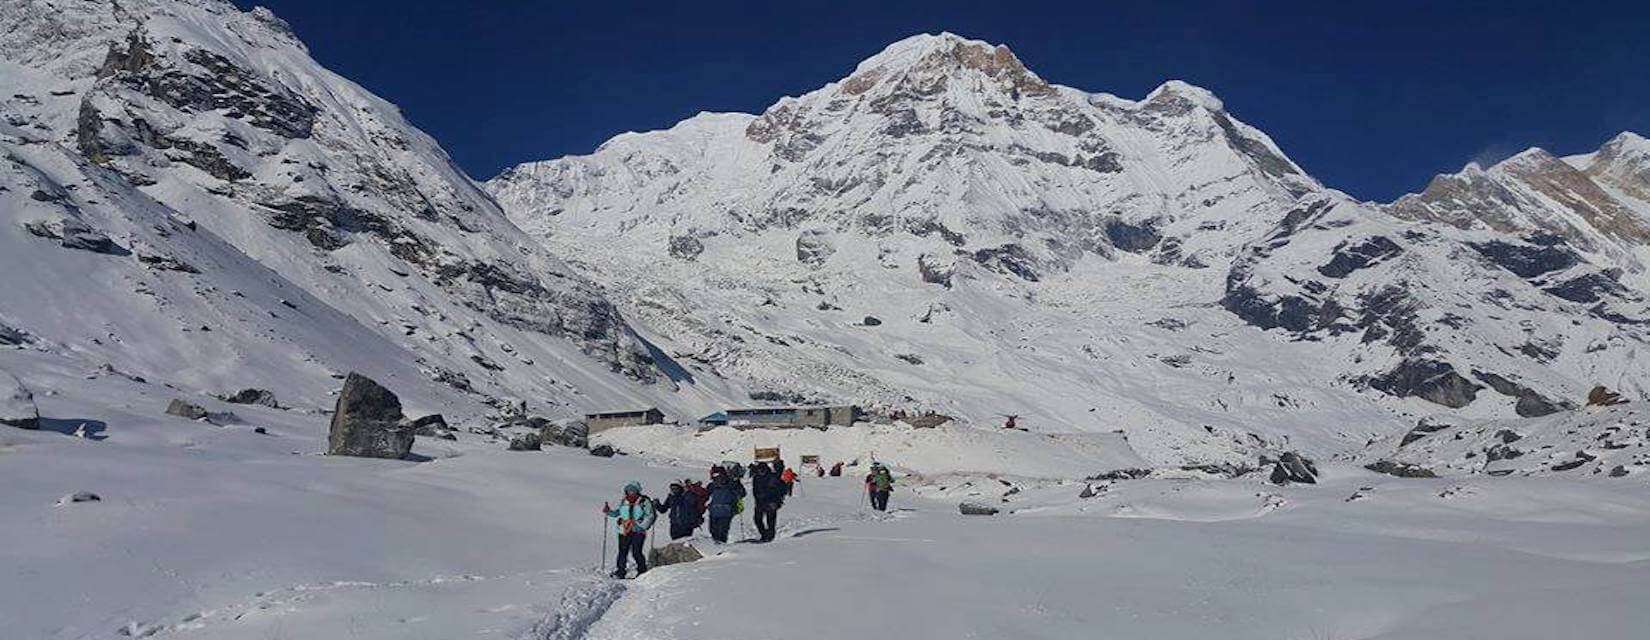 Annapurna Trekking 2020